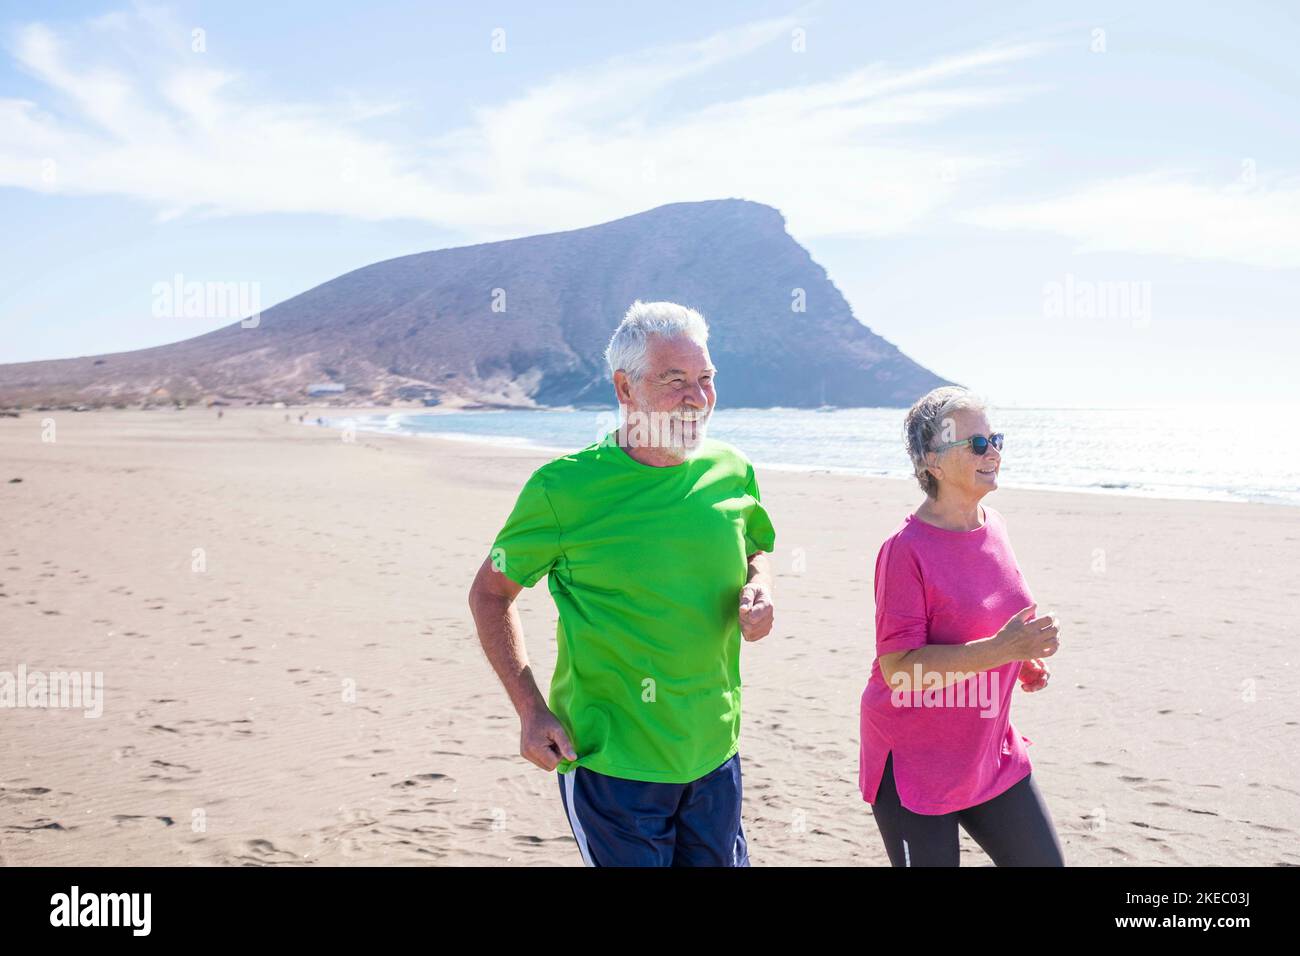 Ein paar von zwei reifen Menschen machen Bewegung und Sport zusammen Am Strand lächelnd und lachend - aktive Senioren tun Joggen und Laufen, um gesund und fit zu sein Stockfoto